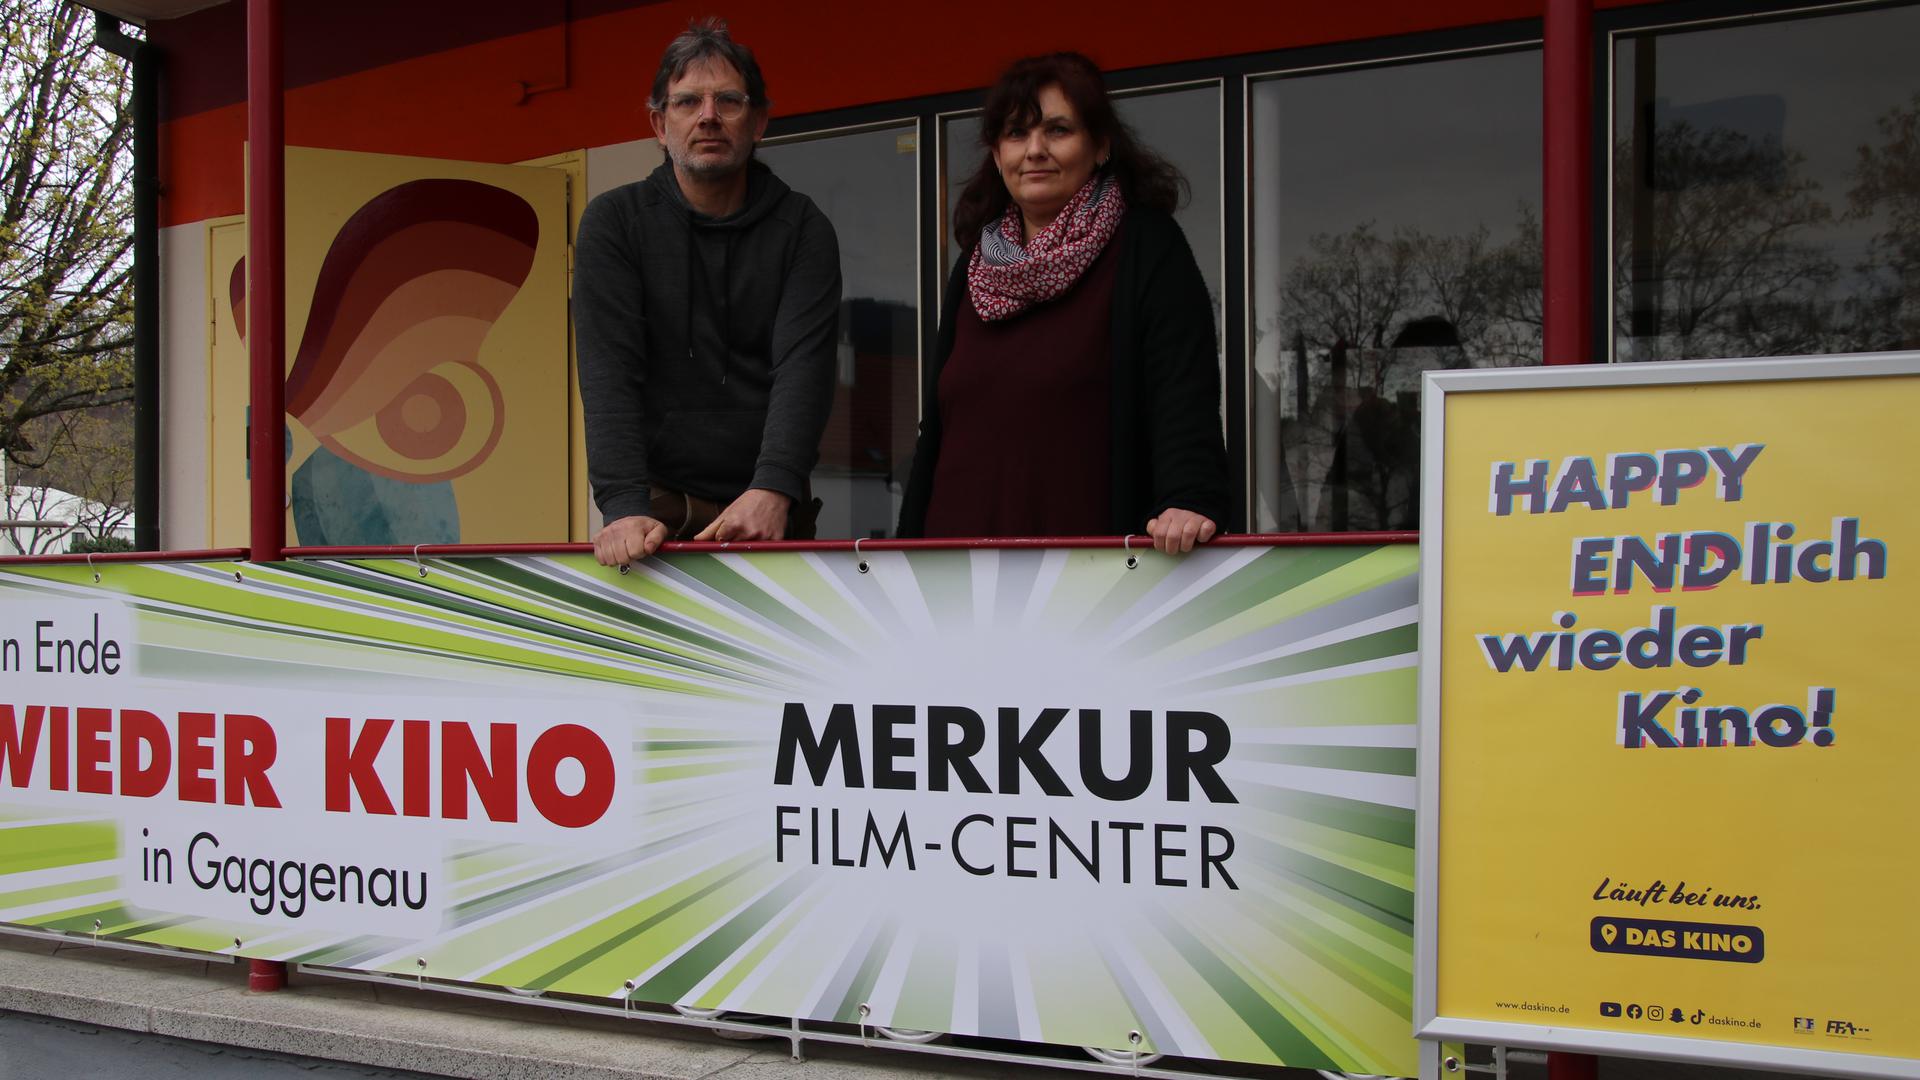 Endlich wieder Kino in Ottenau: Jens und Ines Merkel freuen sich, dass sie das Merkur heute nach der Renovierung wieder eröffnen können.   